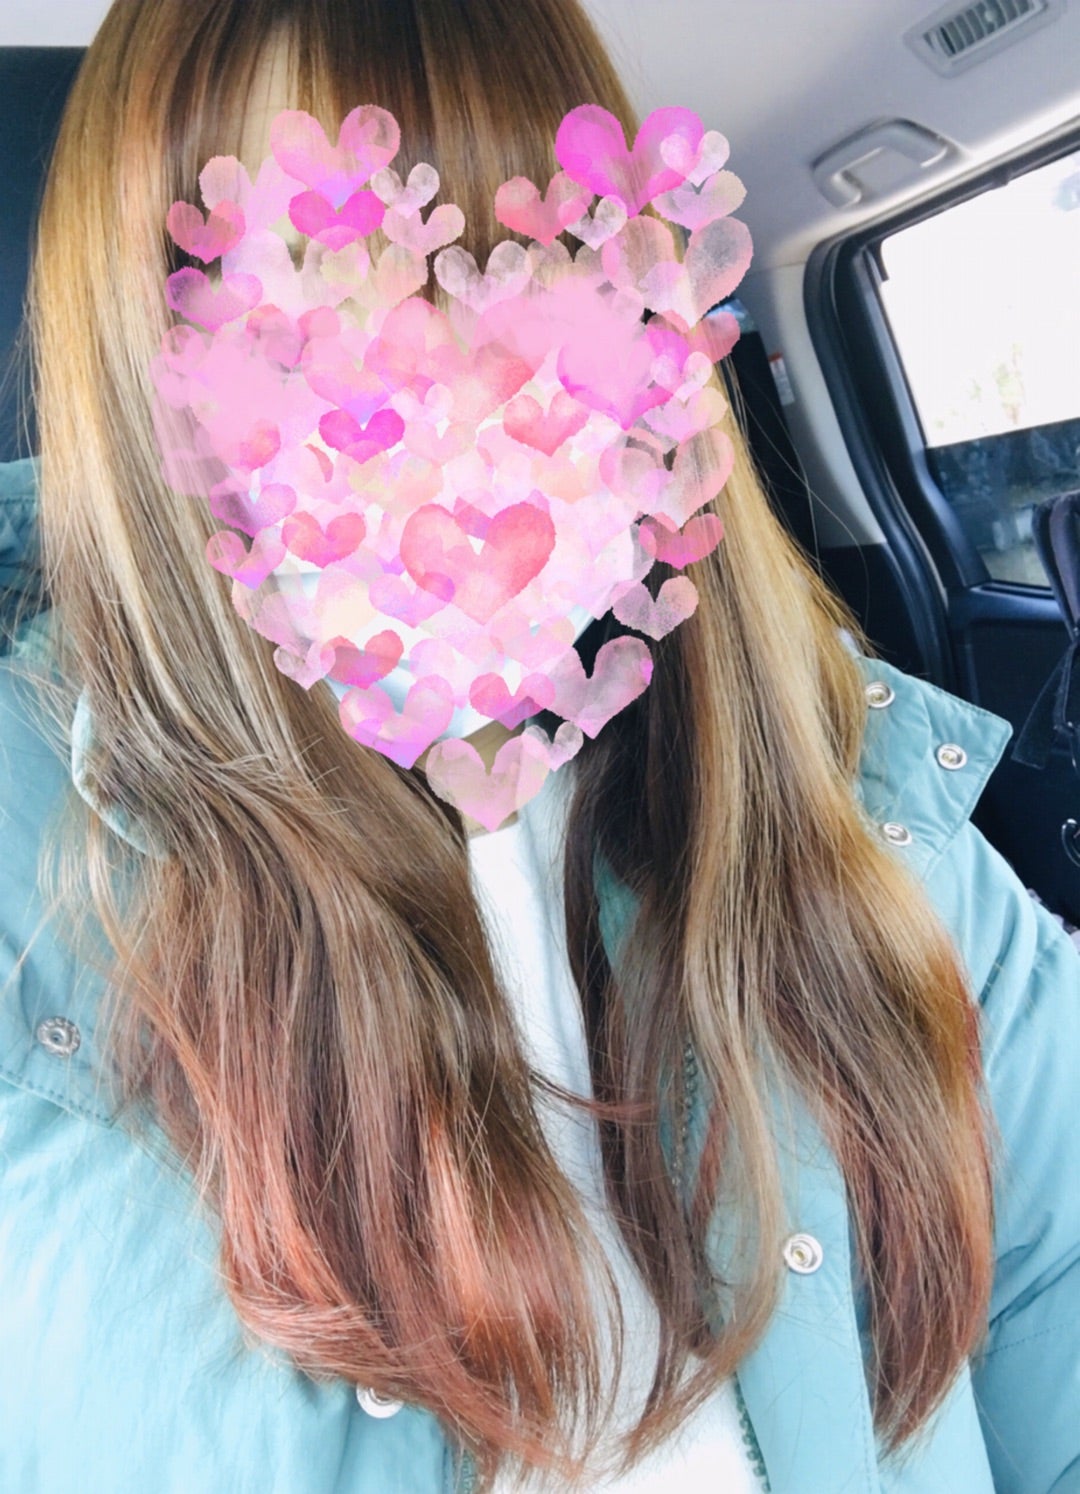 裾カラー ロングヘアーの裾5センチをピンク色に Amazon 楽天 ユニクロ Gu しまむらなどなど とにかくお買い物大好きブログ